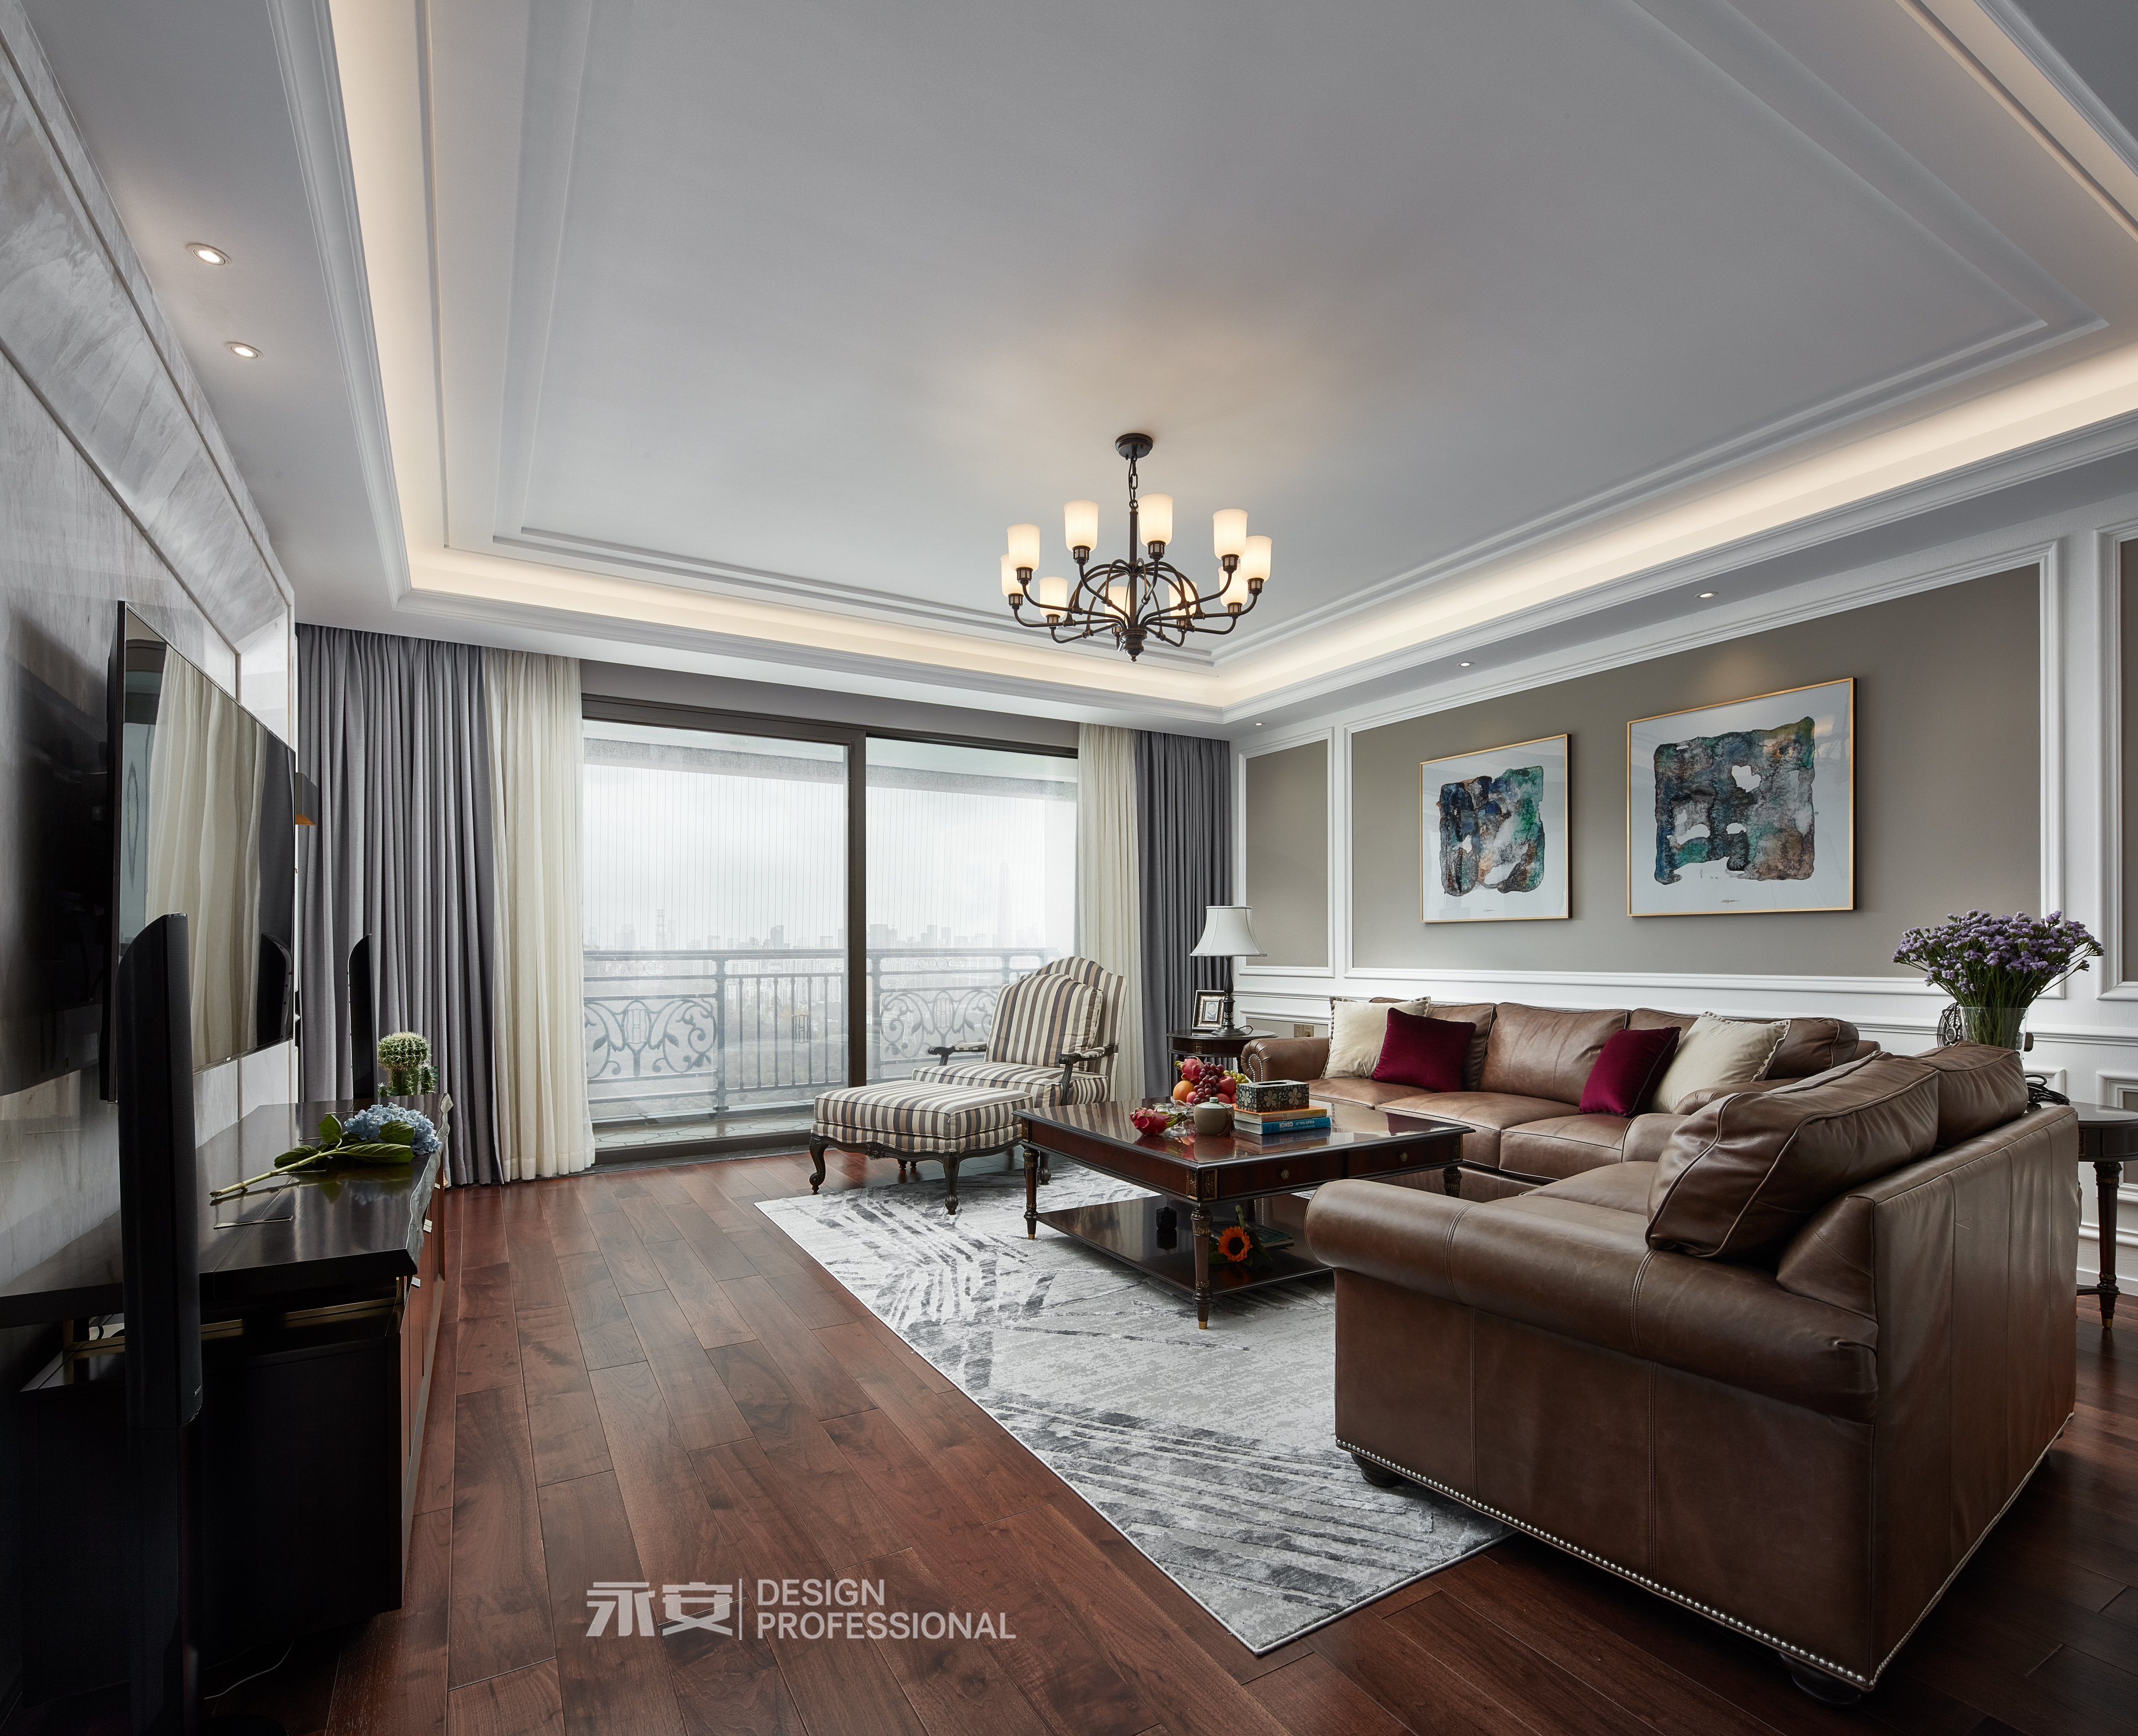 客厅窗帘装修效果图经典美式美式客厅吊灯图片美式客厅设计图片赏析